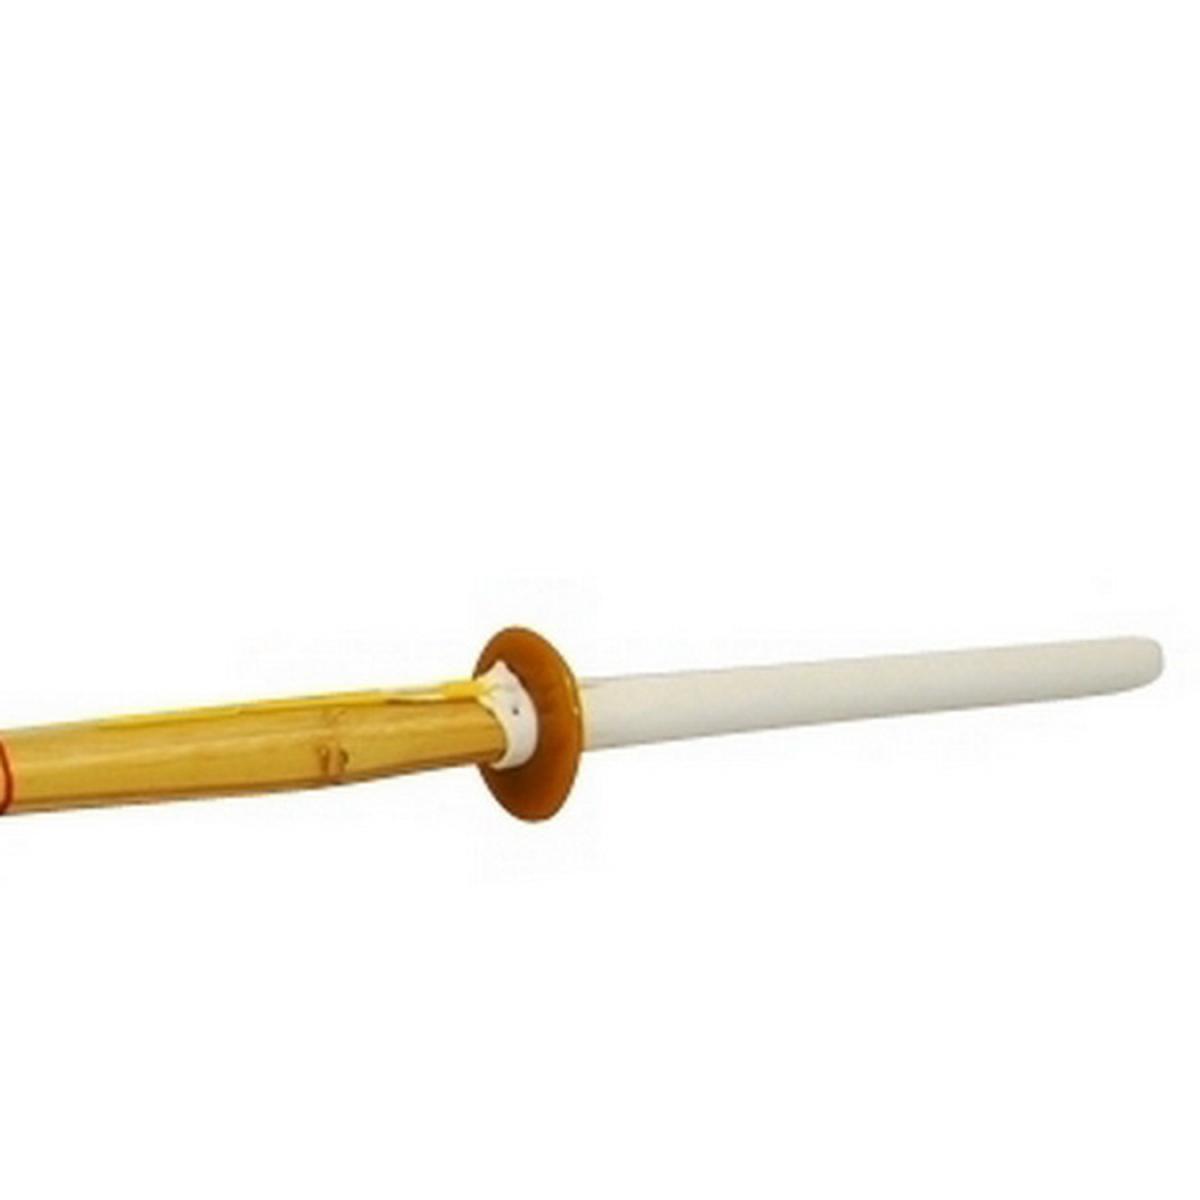 Shinai 118 cm (38) for Kendo ➤ www.bokken-wshop.de✅ suitable for Aikido, Kendo, Koryu, Kenjutsu, Yoseikan, Jodot✅ Your Kendo dealer!